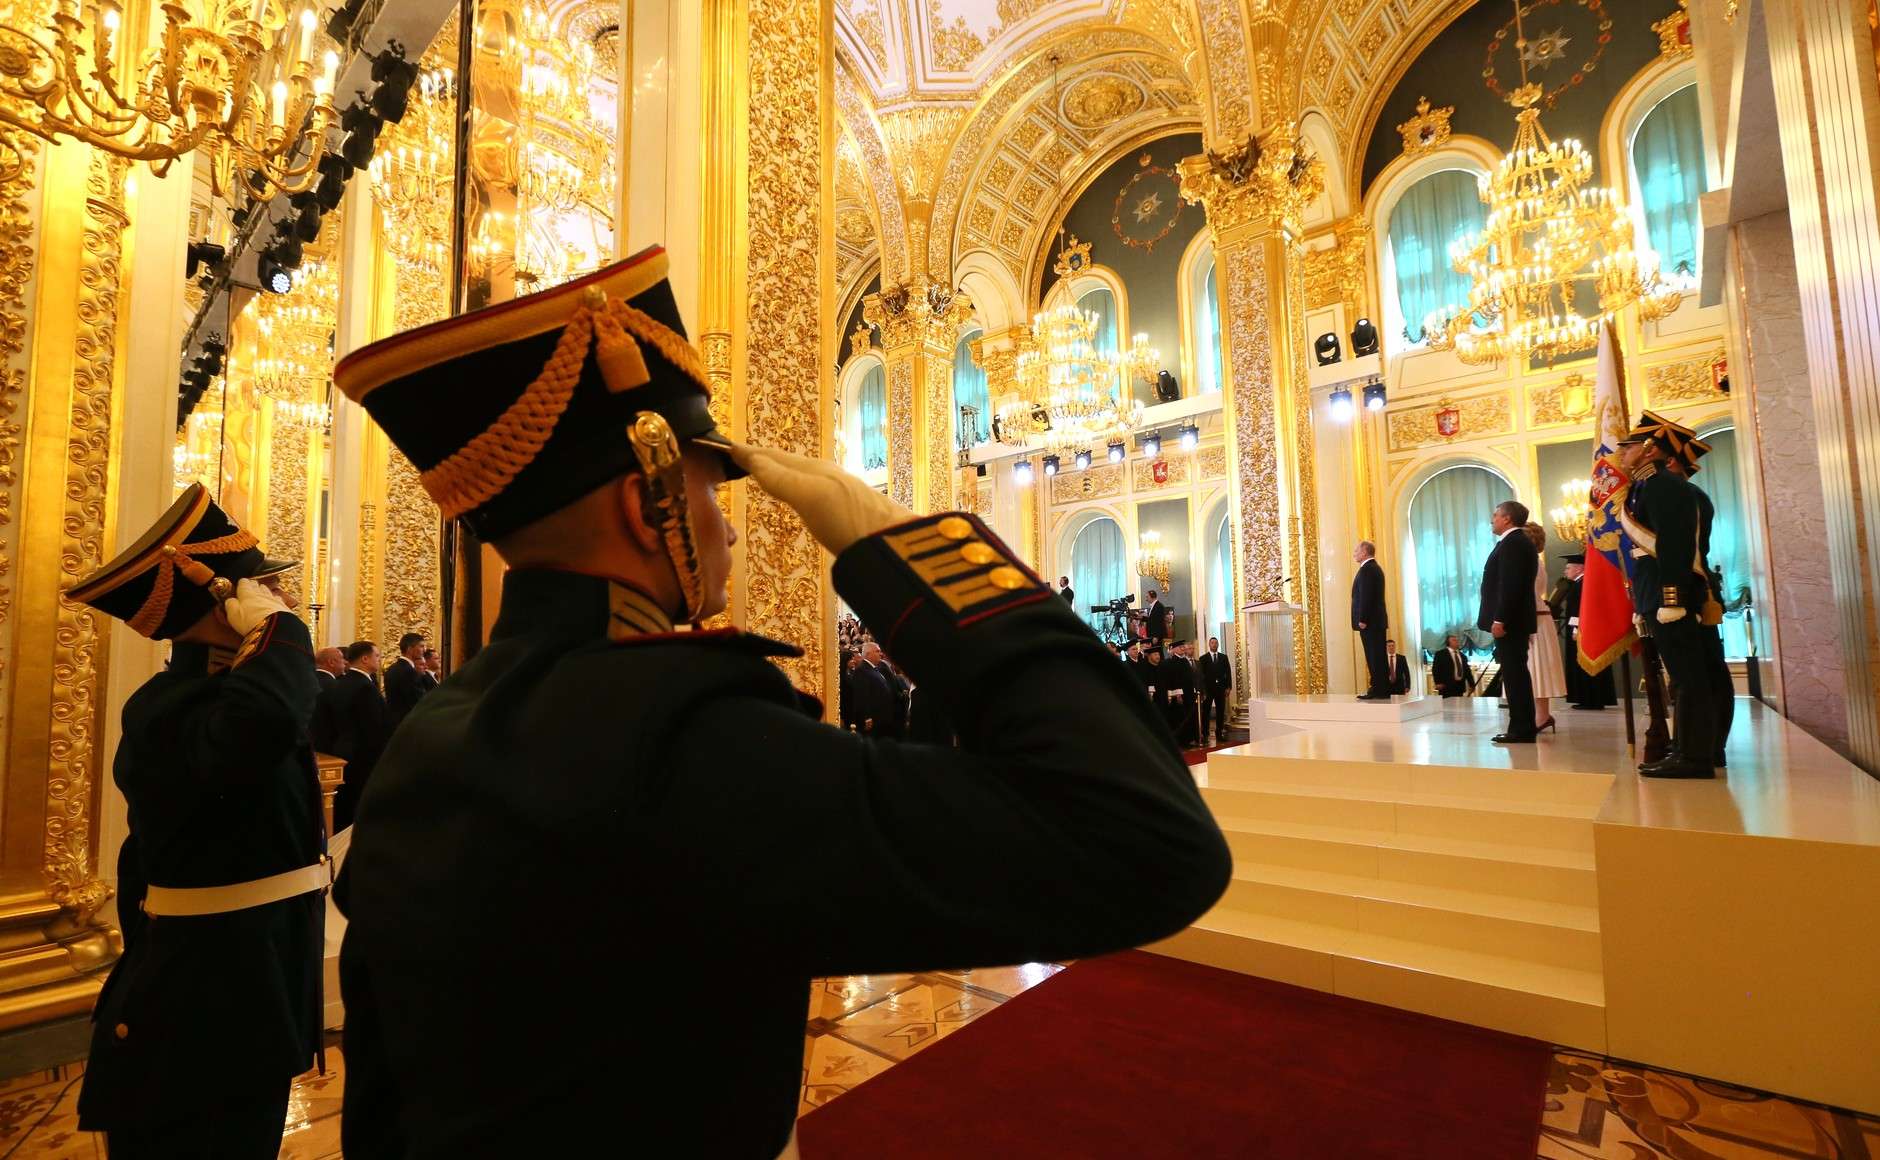 Οι Ρώσοι τραβάνε το σχοινί και ζητούν εξηγήσεις για άρνηση βίζας σε κληρικούς